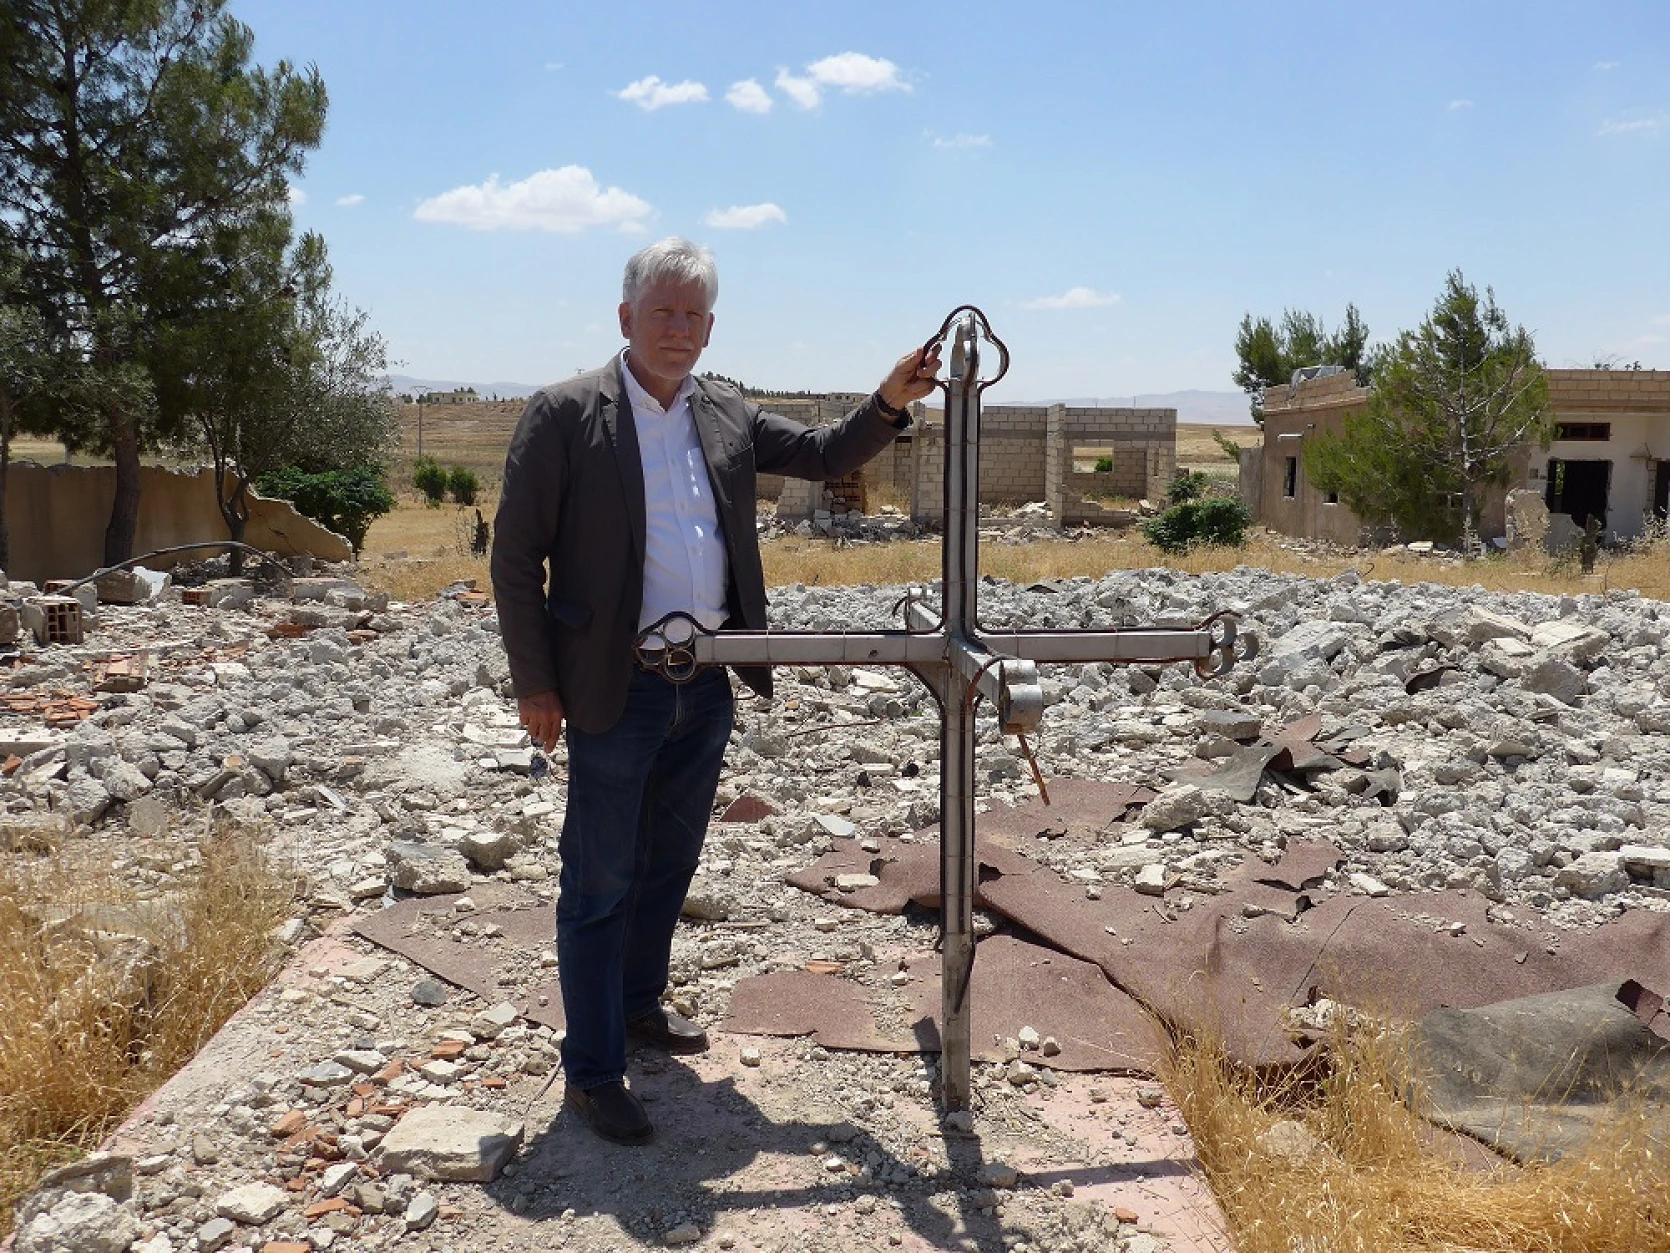 Depuis la Méditerranée jusqu’en Irak, une immense région a été nettoyée religieusement. De nombreuses églises ont été profanées ou détruites, comme ici dans un petit village au bord de la rivière Khabour, au nord-est de la Syrie. (csi)